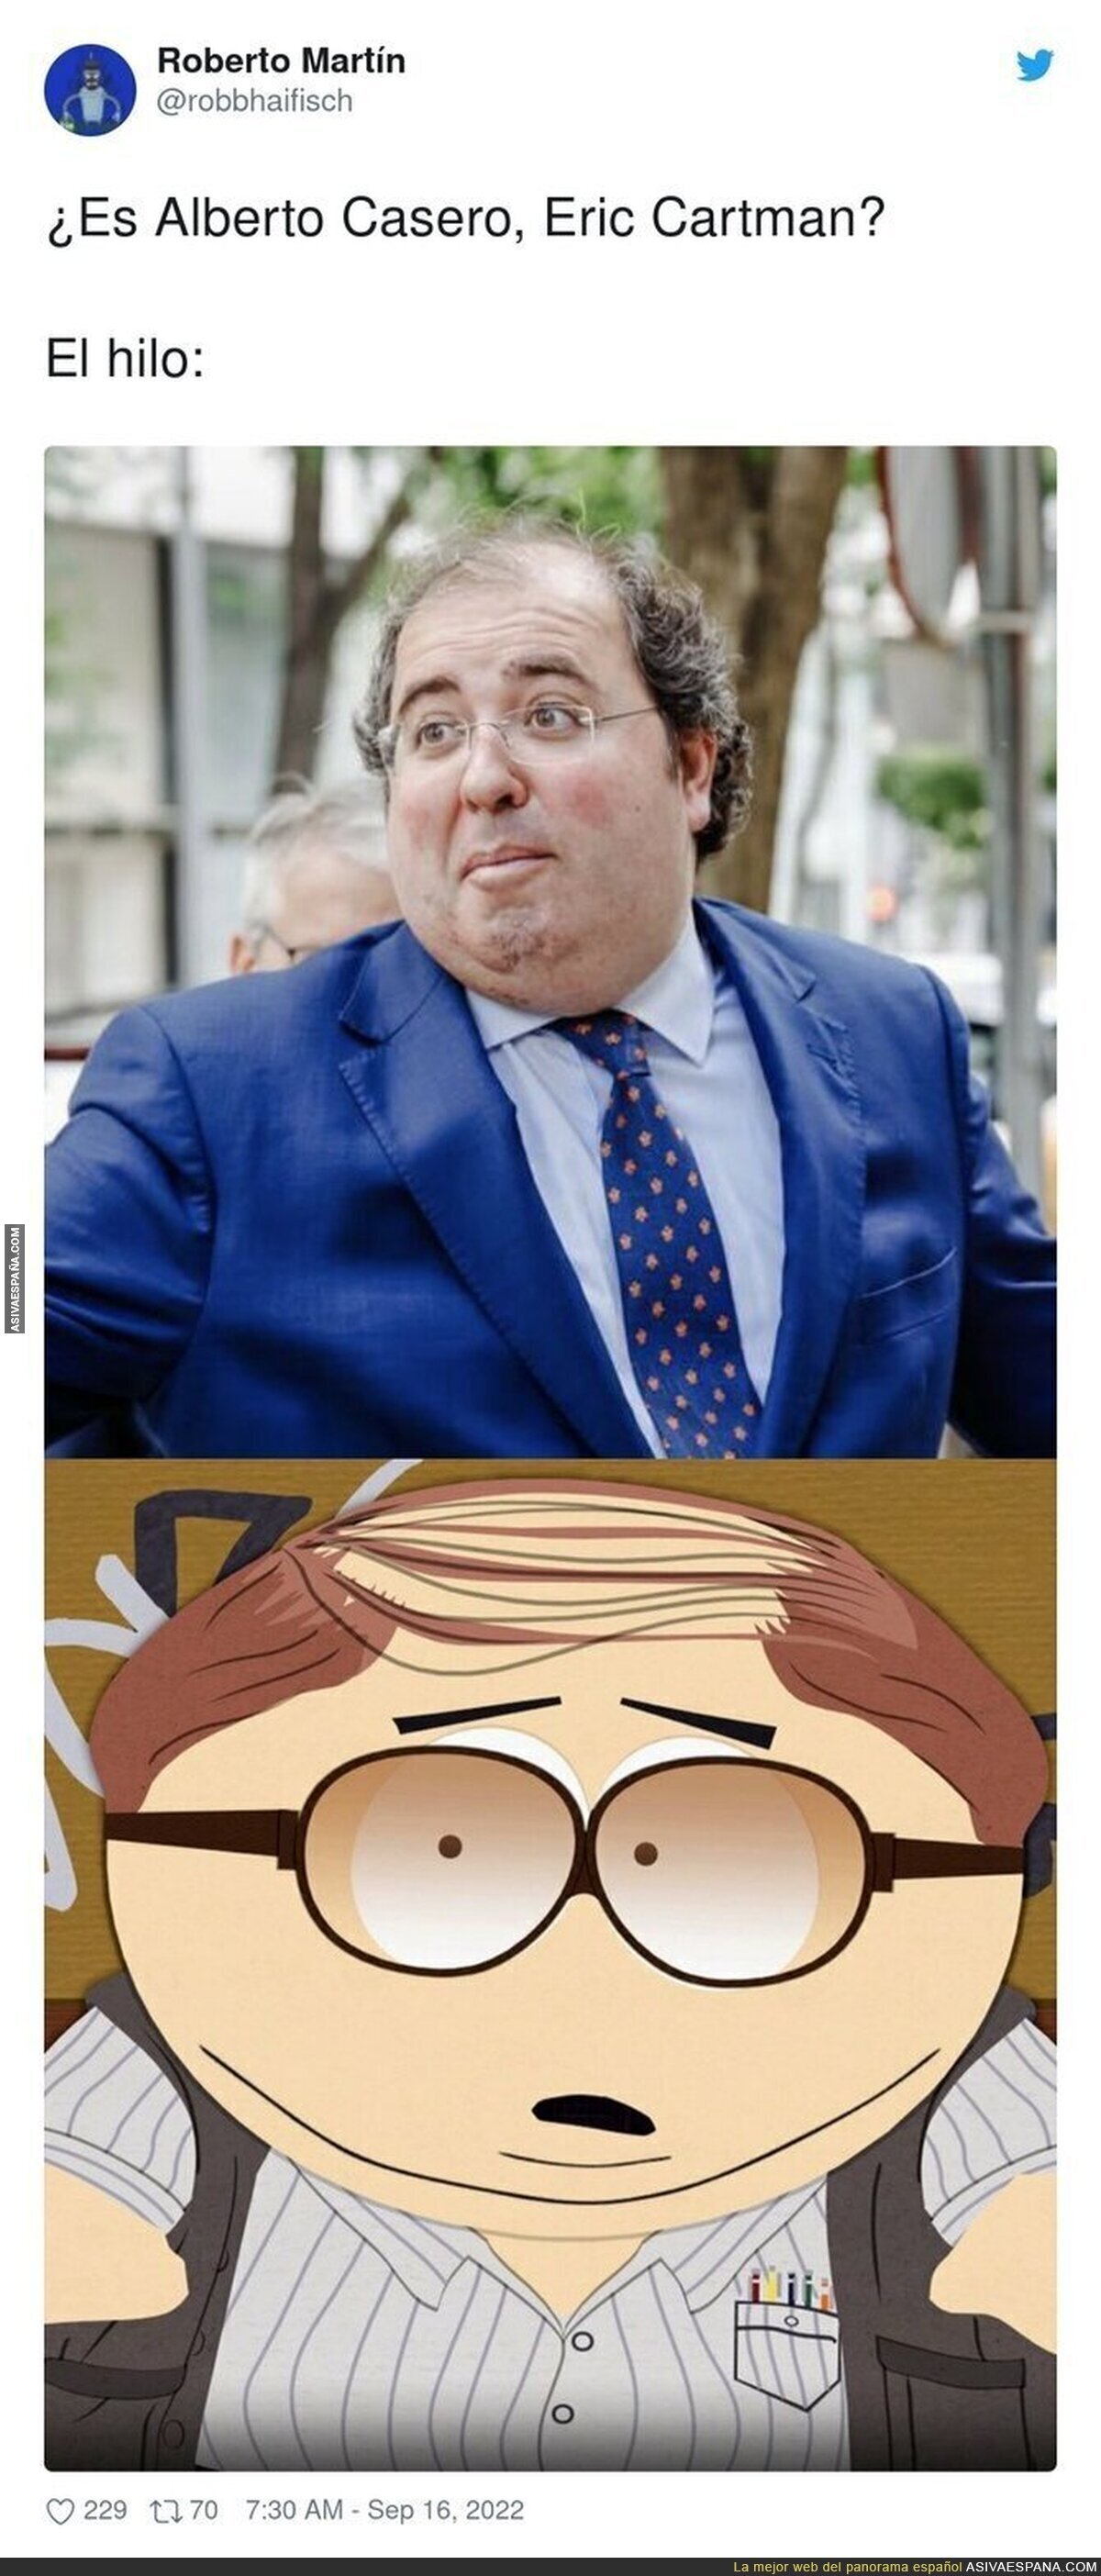 Todo hace indicar que Alberto Casado del PP es Eric Cartman de South Park